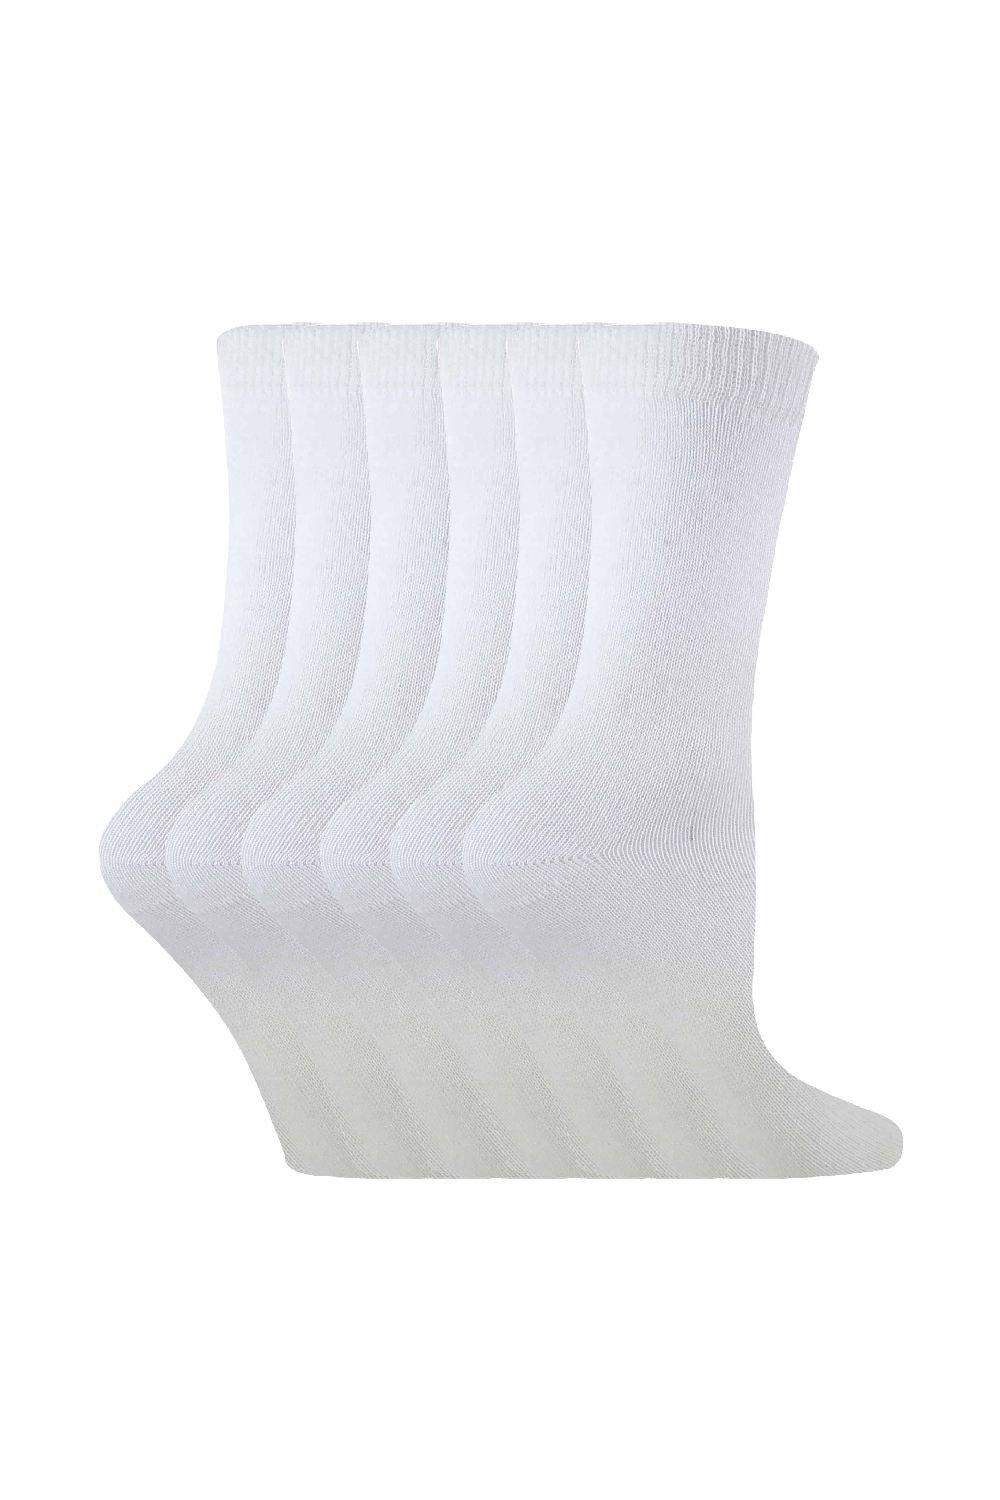 6 пар однотонных повседневных хлопковых носков Sock Snob, белый